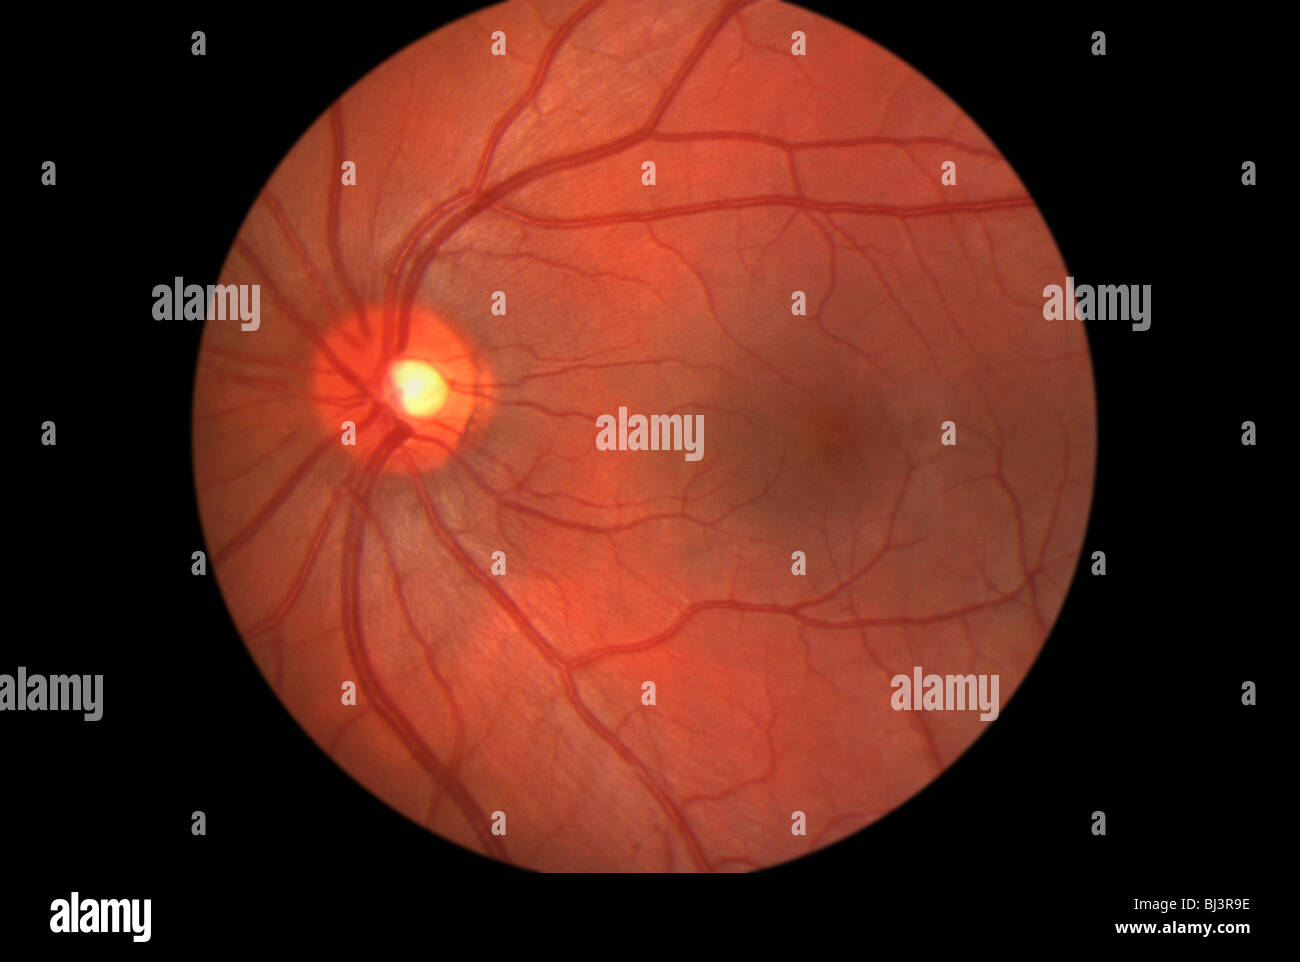 Medizinische Bildverarbeitung im Inneren des menschlichen Auges zeigt der Netzhaut Stockfoto